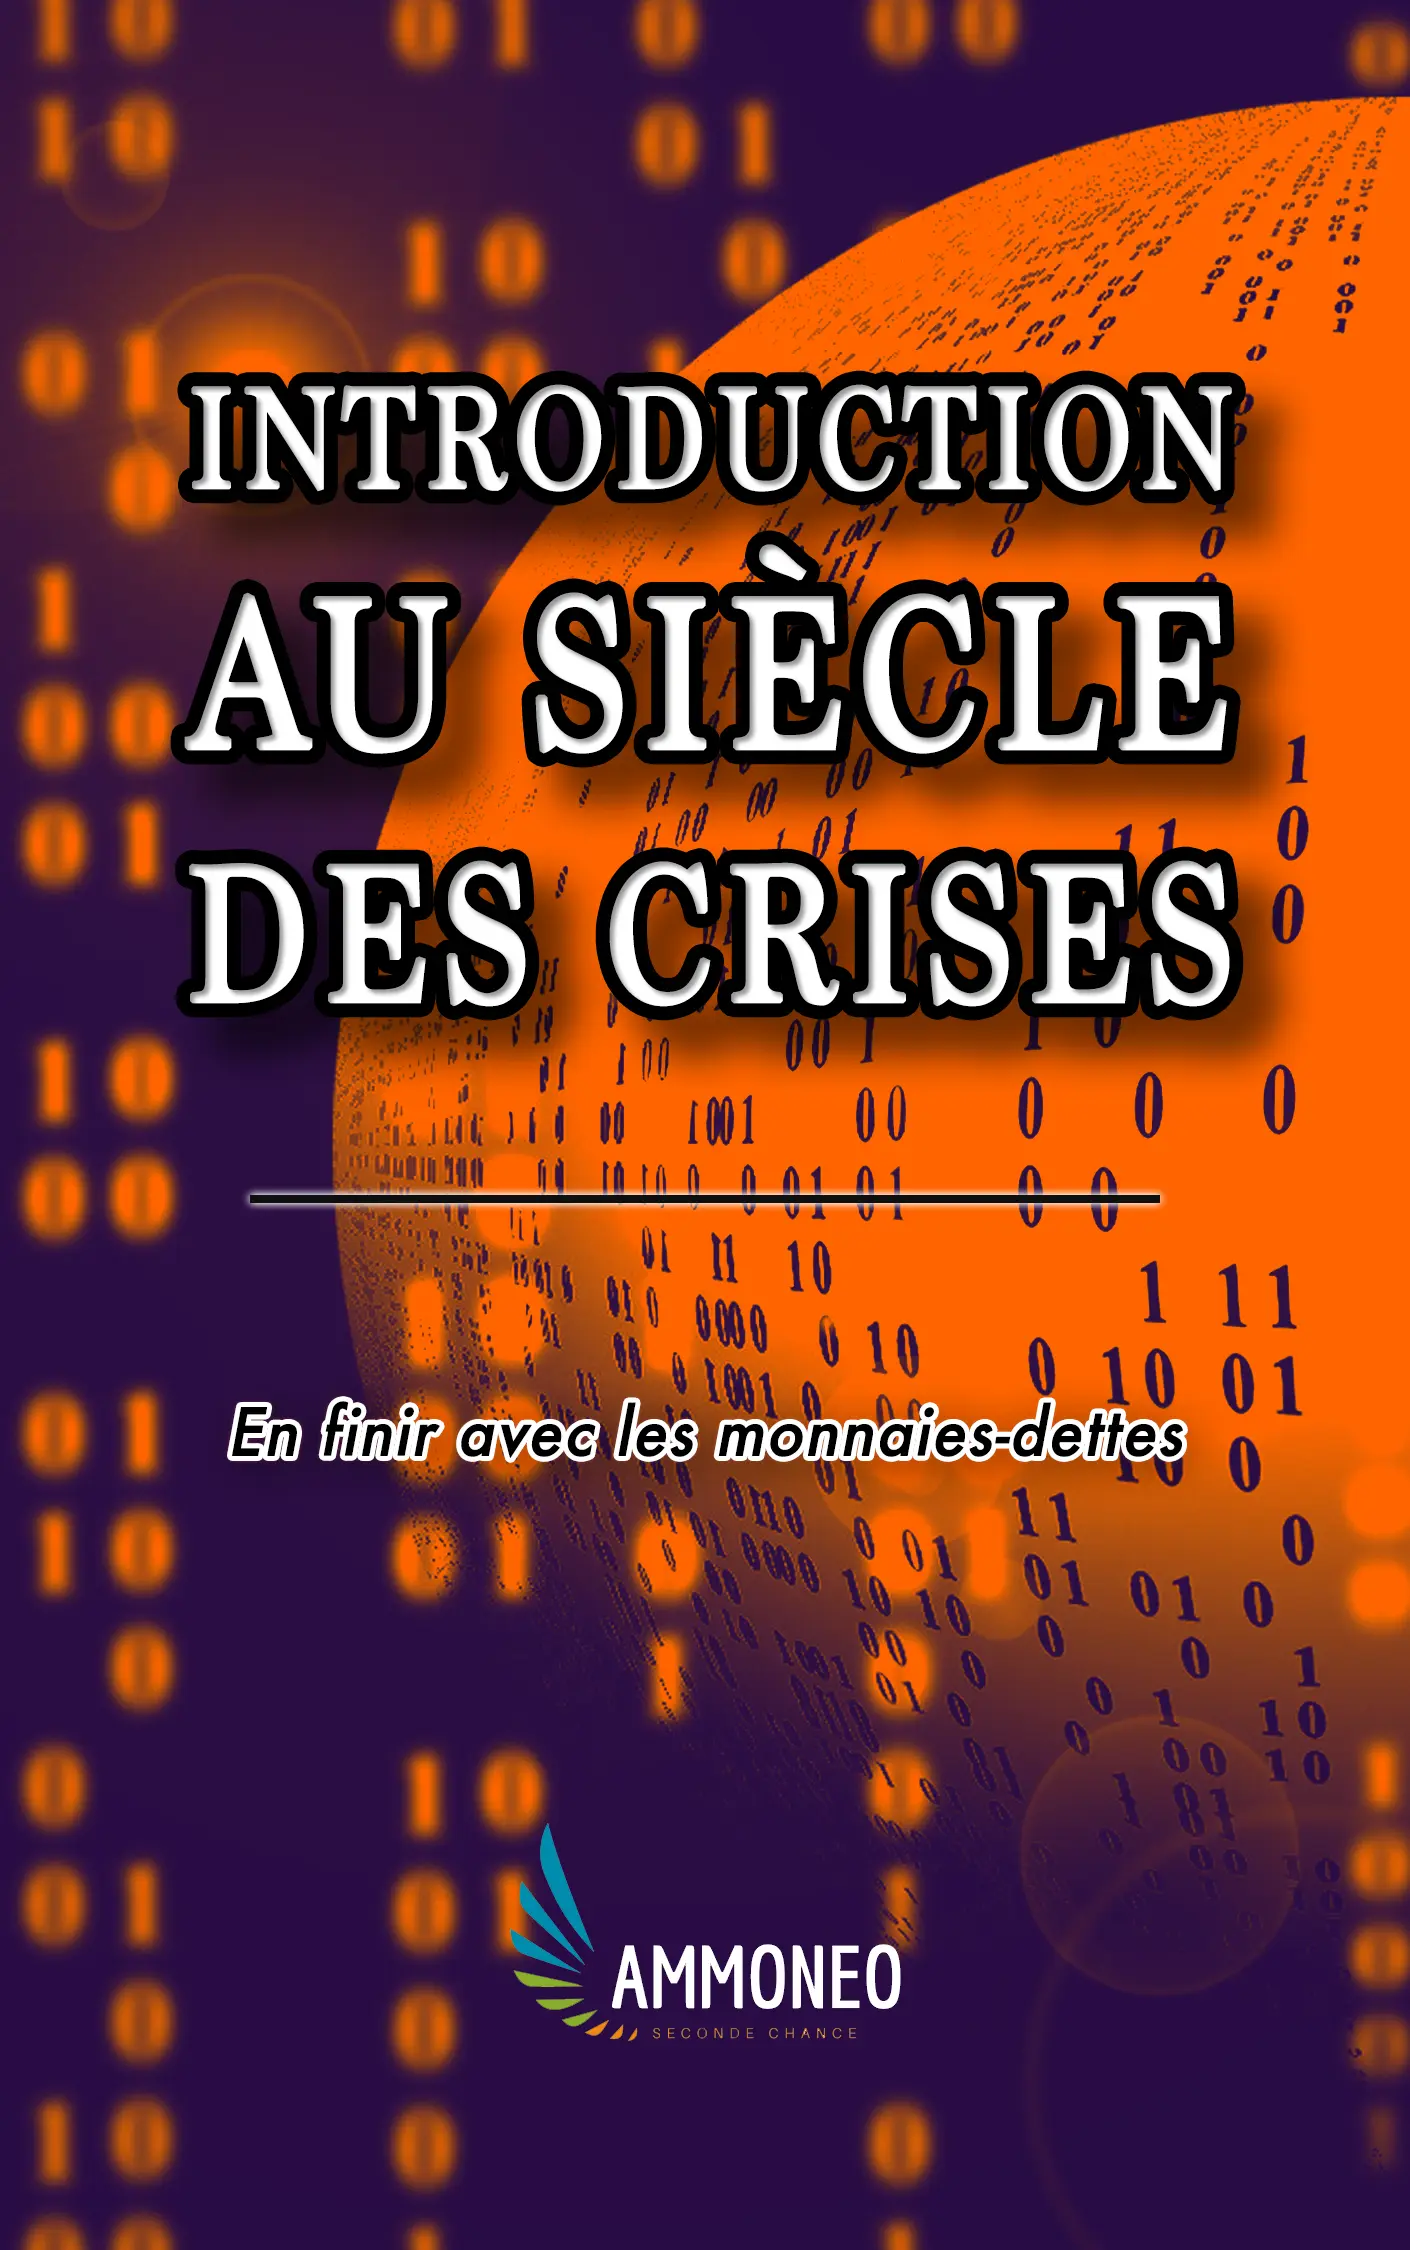 Couverture du livre blanc intitulé “Introduction au siècle des crises en finir avec les monnaies-dettes”